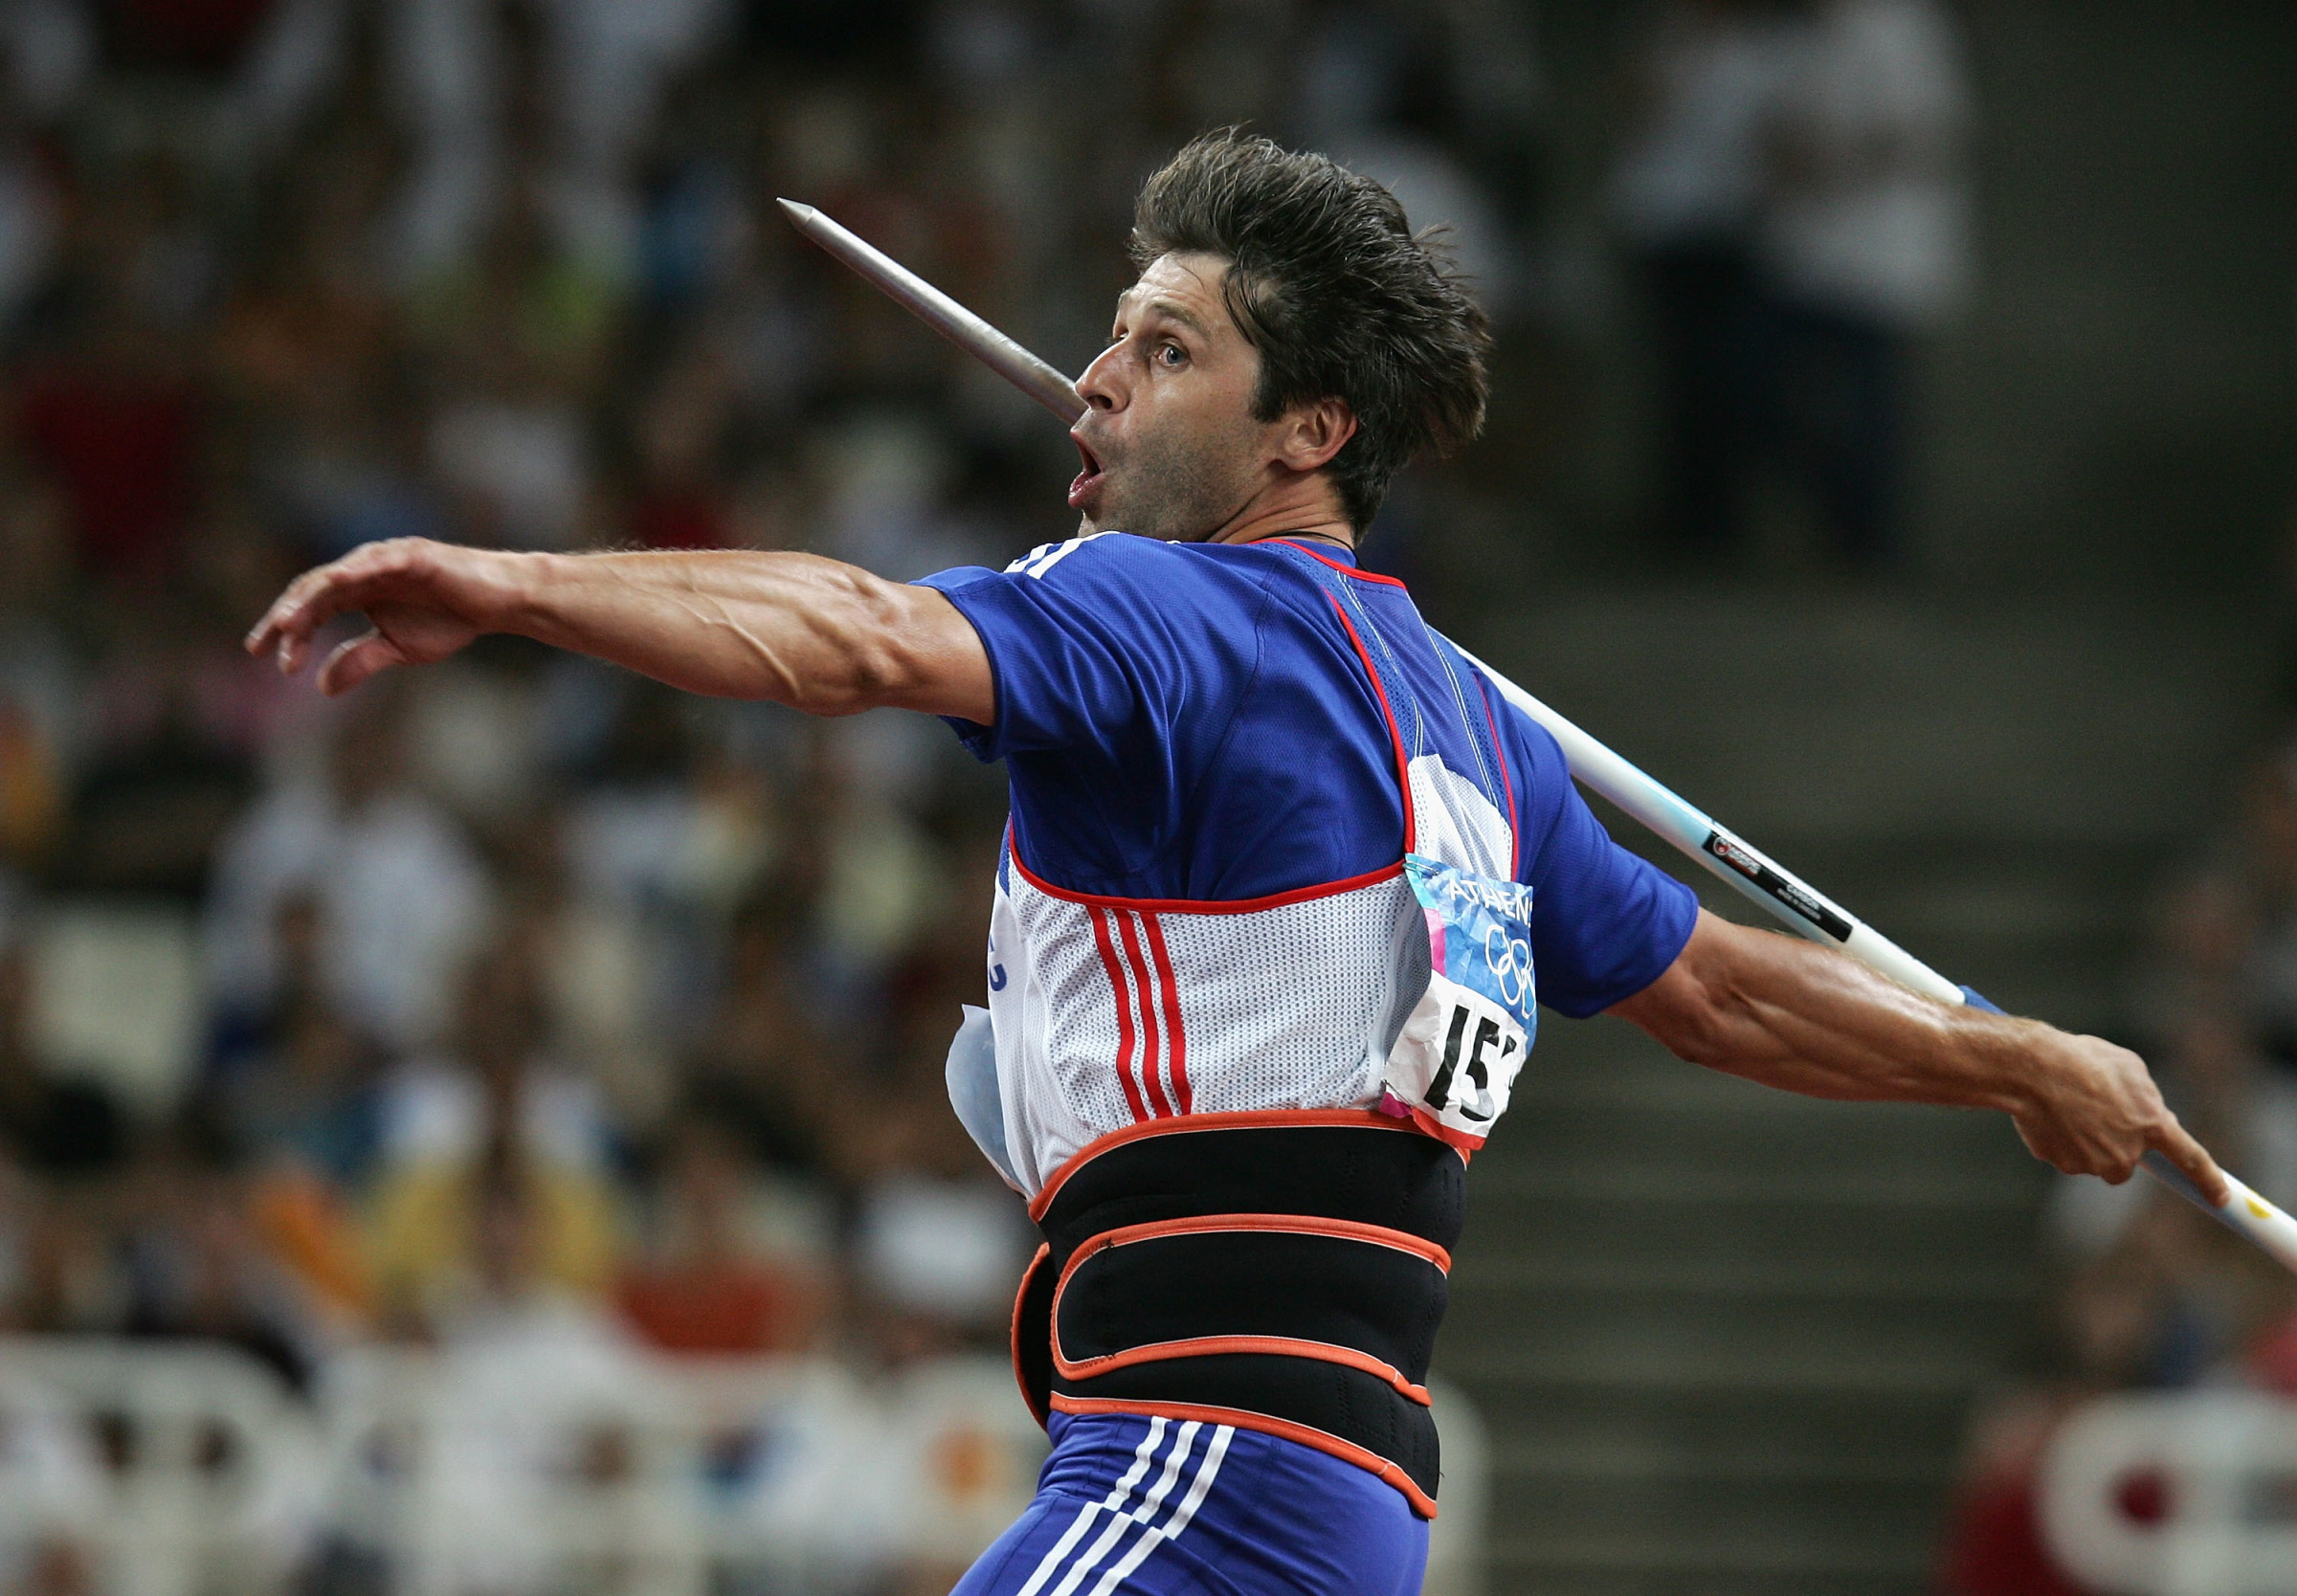 Lekkoatletyka - Johannes Vetter zbliżył się do rekordu świata w rzucie  oszczepem Jana Żeleznego | Eurosport w TVN24